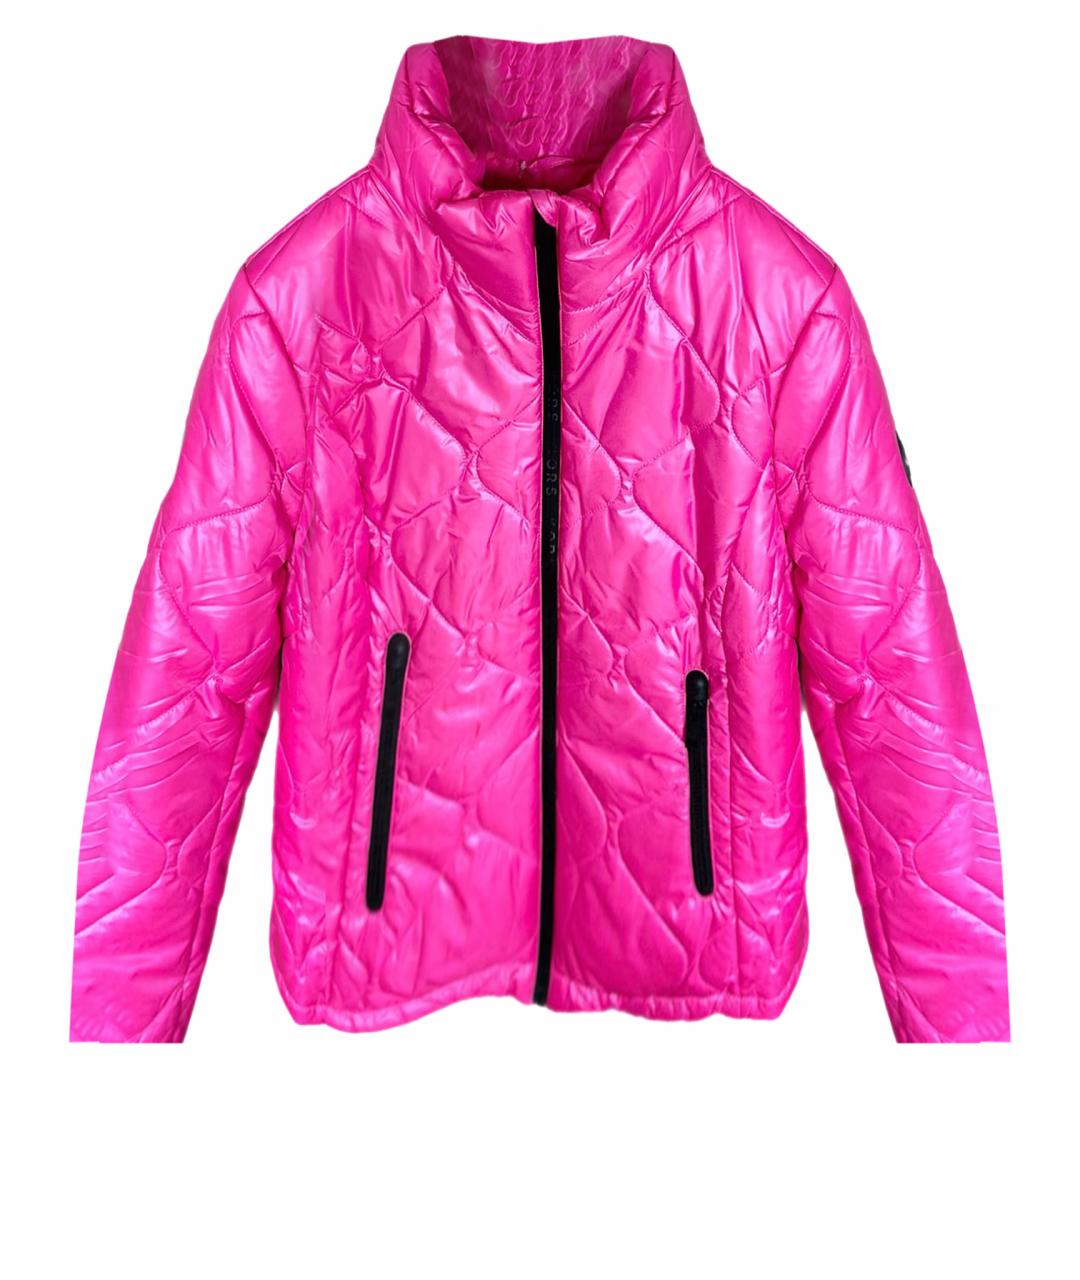 MICHAEL KORS Розовая синтетическая куртка, фото 1